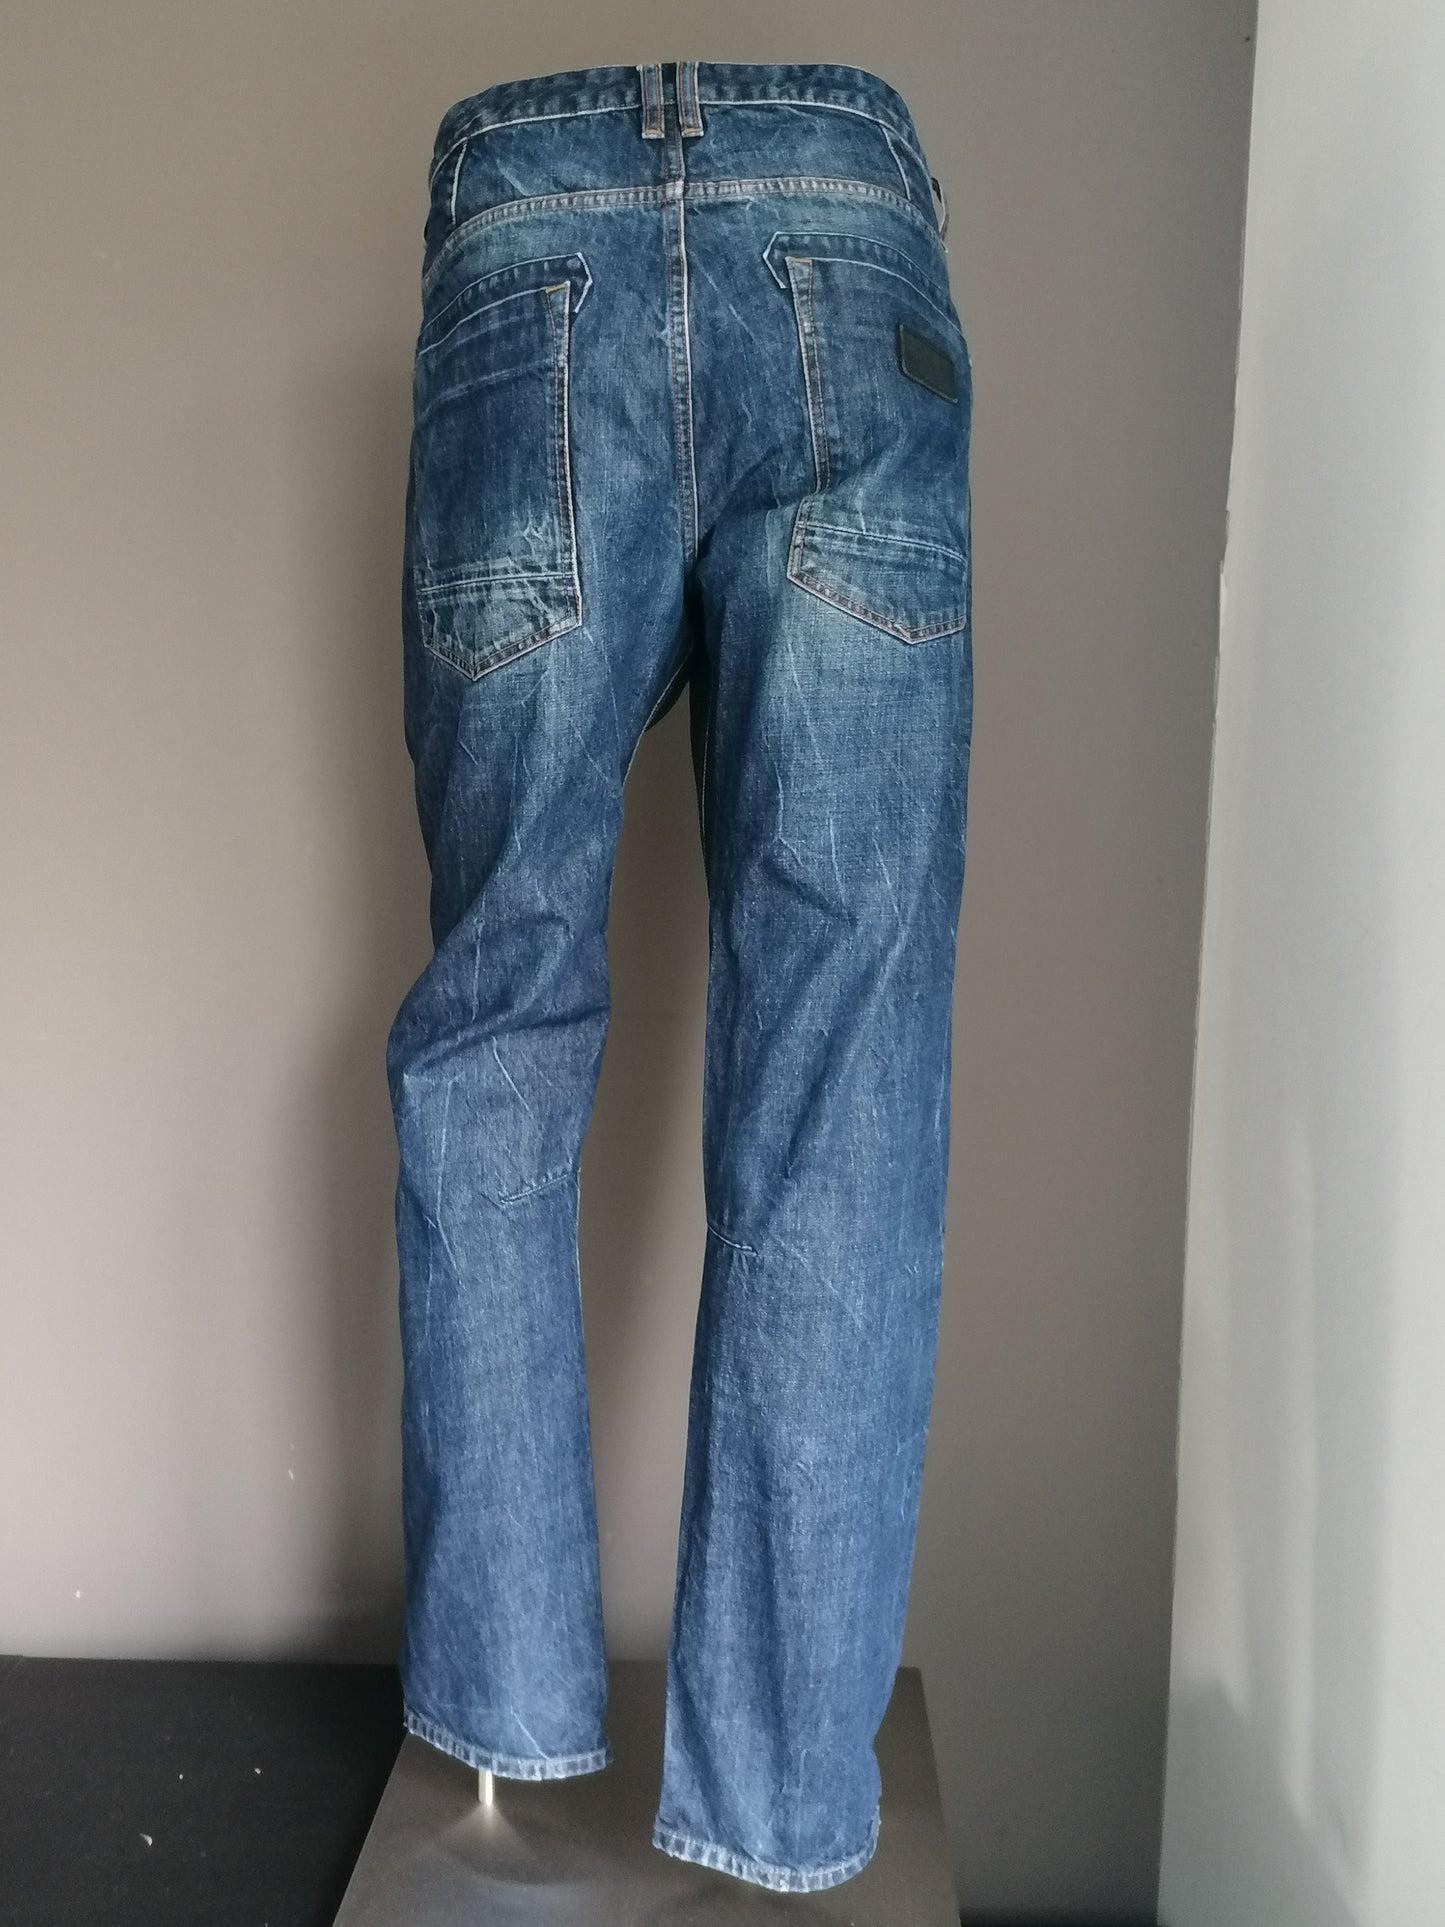 Silvercreek Jeans. Dunkelblau farbig. Größe W38 - L34. Tischlertyp.